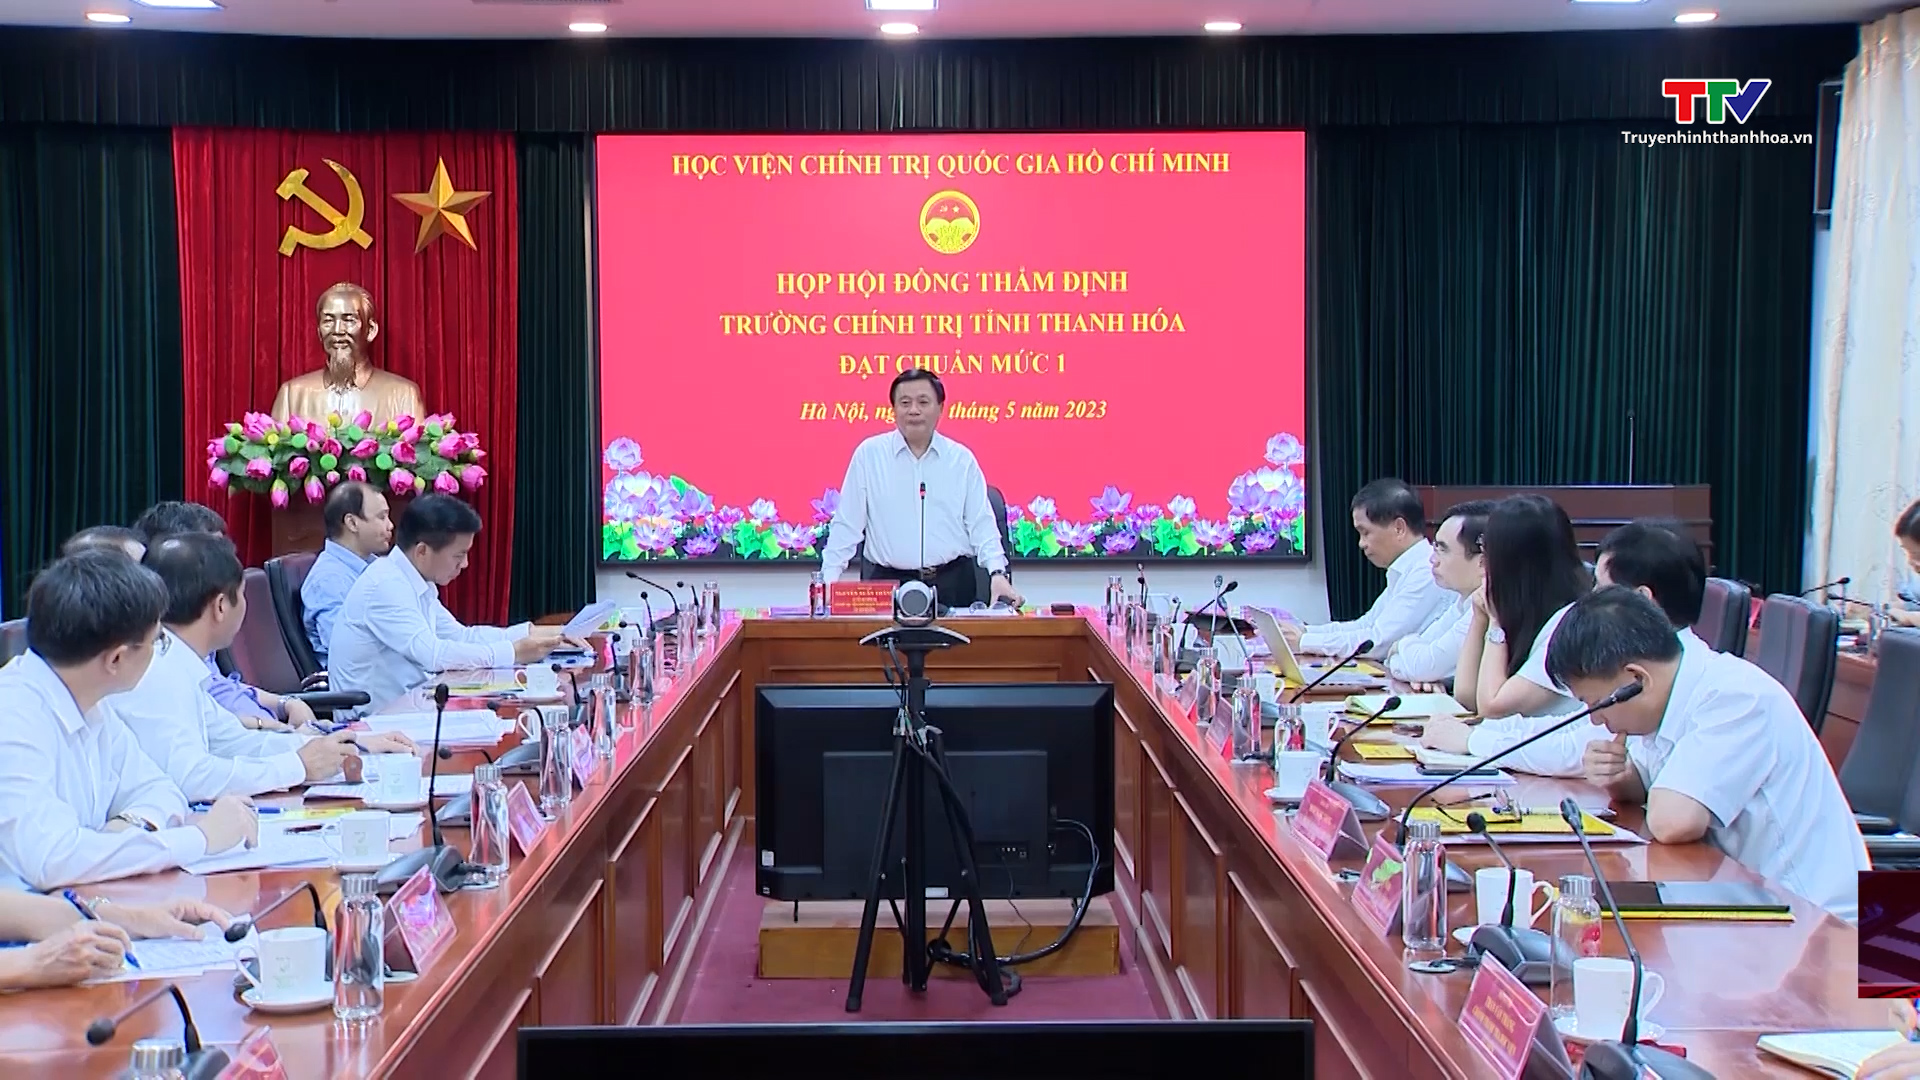 Trường Chính trị tỉnh Thanh Hóa được công nhận đạt chuẩn mức 1 - Ảnh 2.